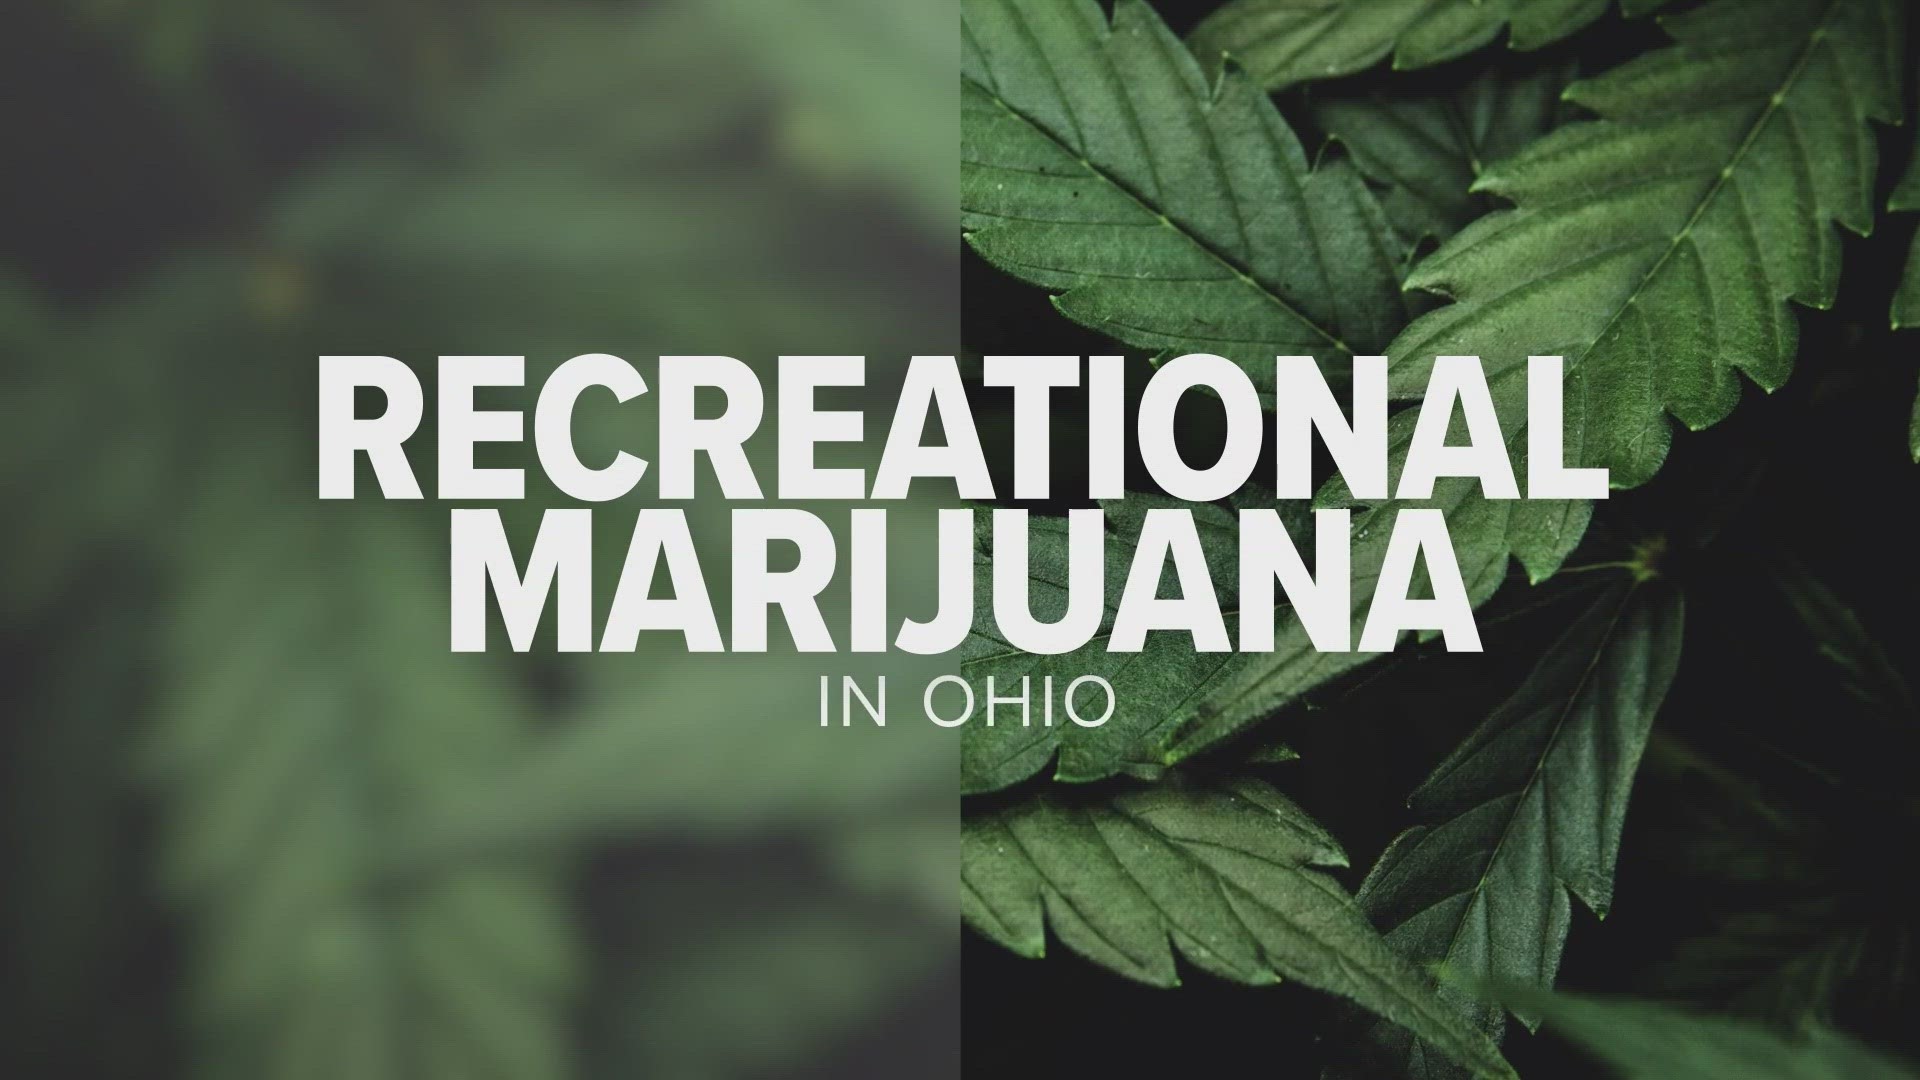 Ohio voters pass Issue 2 legalizing recreational marijuana Here's what